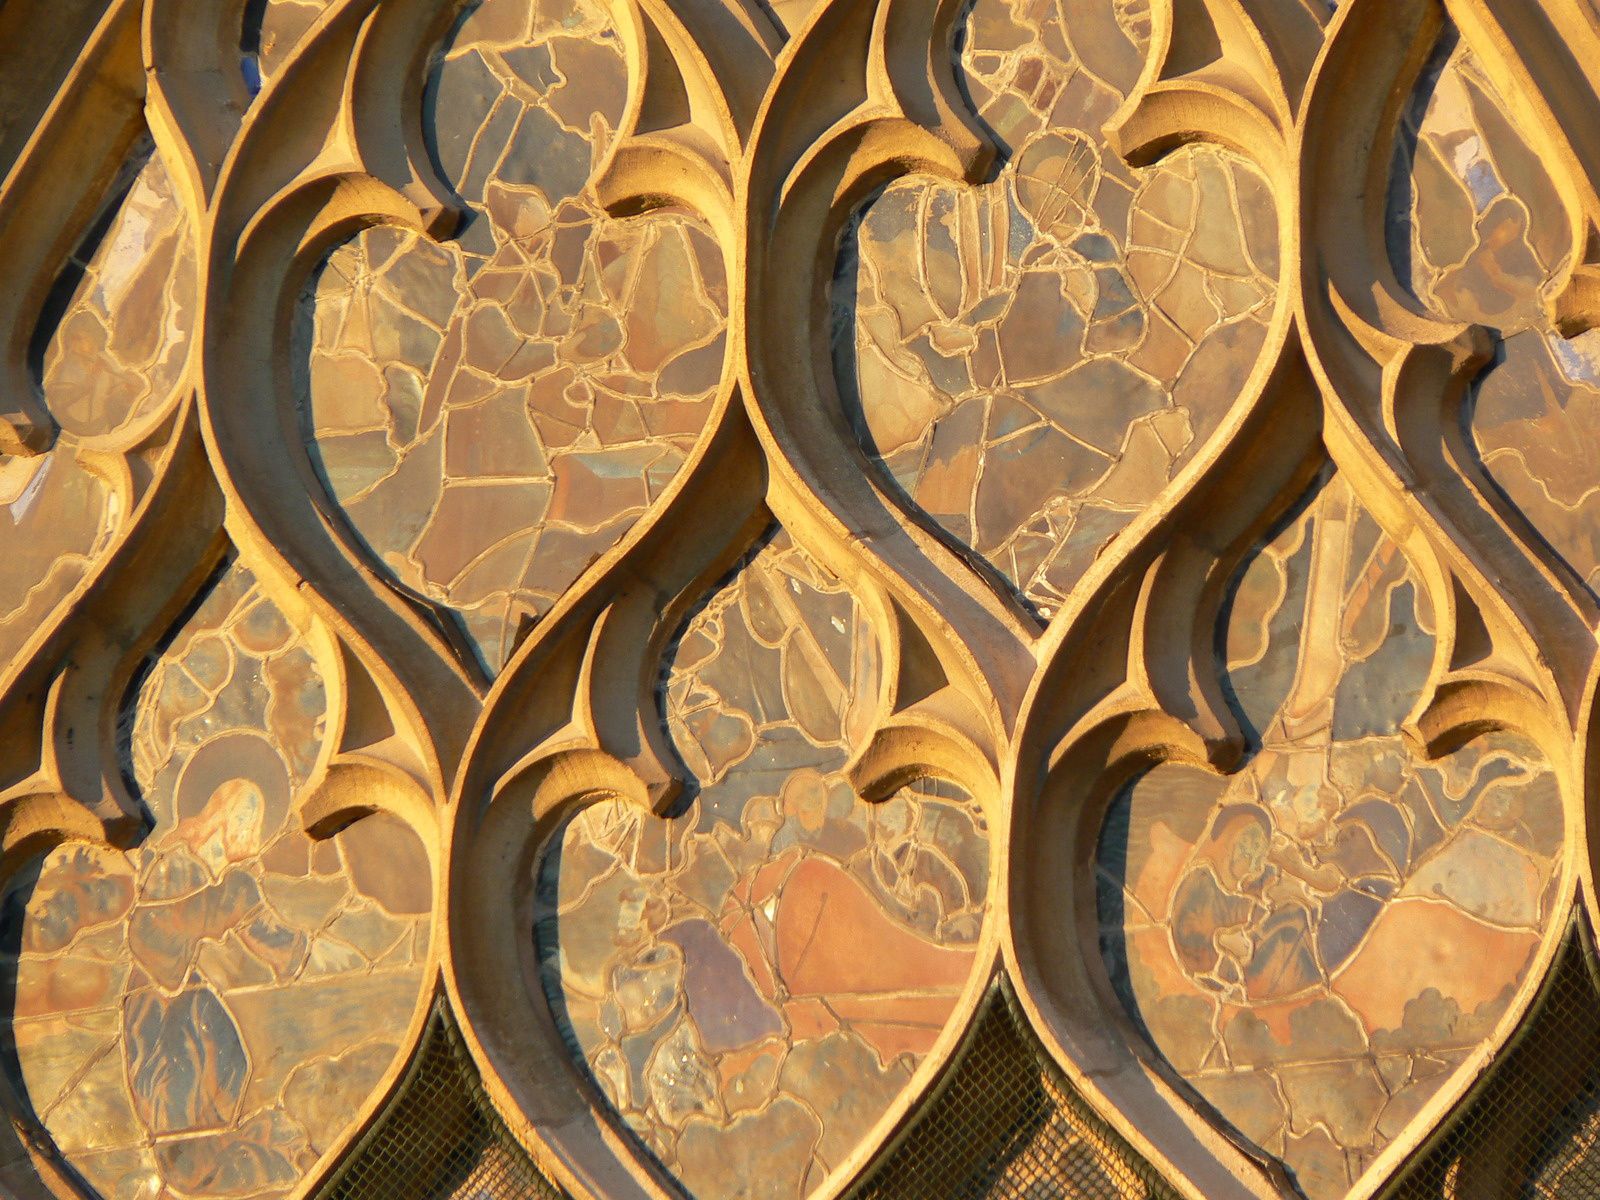 Les formes des remplages des vitraux rappellent la danse des flammes. C'est pour cela que Hyacinthe Langlois a nommé cette phase "gothique flamboyant" pour désigner la finesse des sculptures s'élevant vers le ciel (cliché Armand Launay, 2010). 